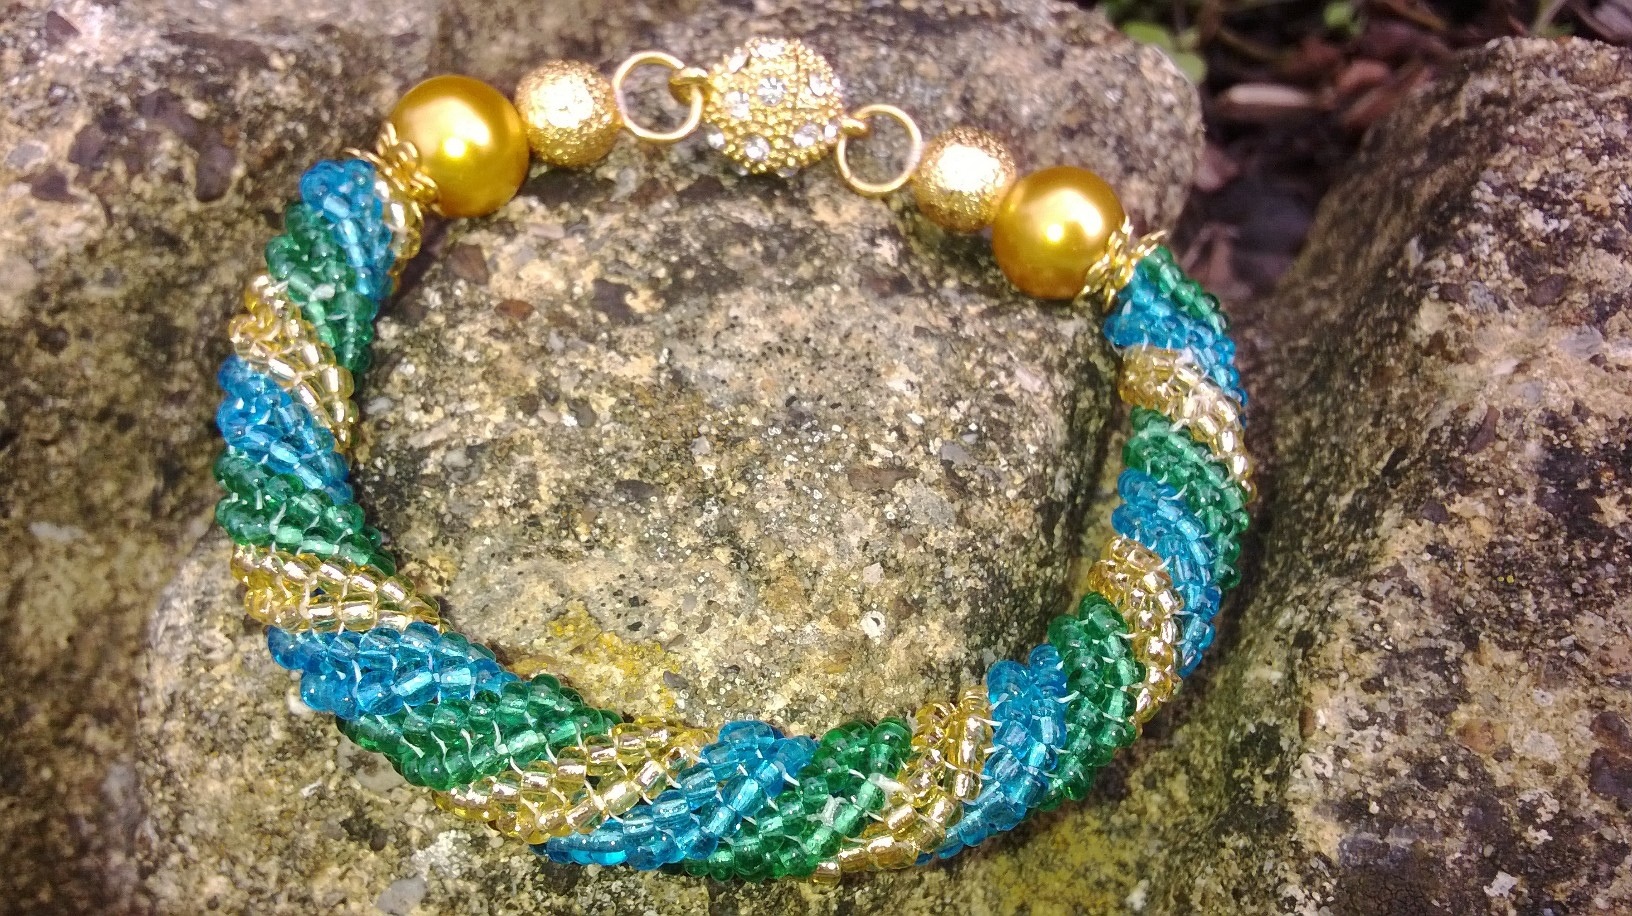 Buy Herringbone Bead Stitch Bracelet Tutorial Bead Weaving Online in India   Etsy